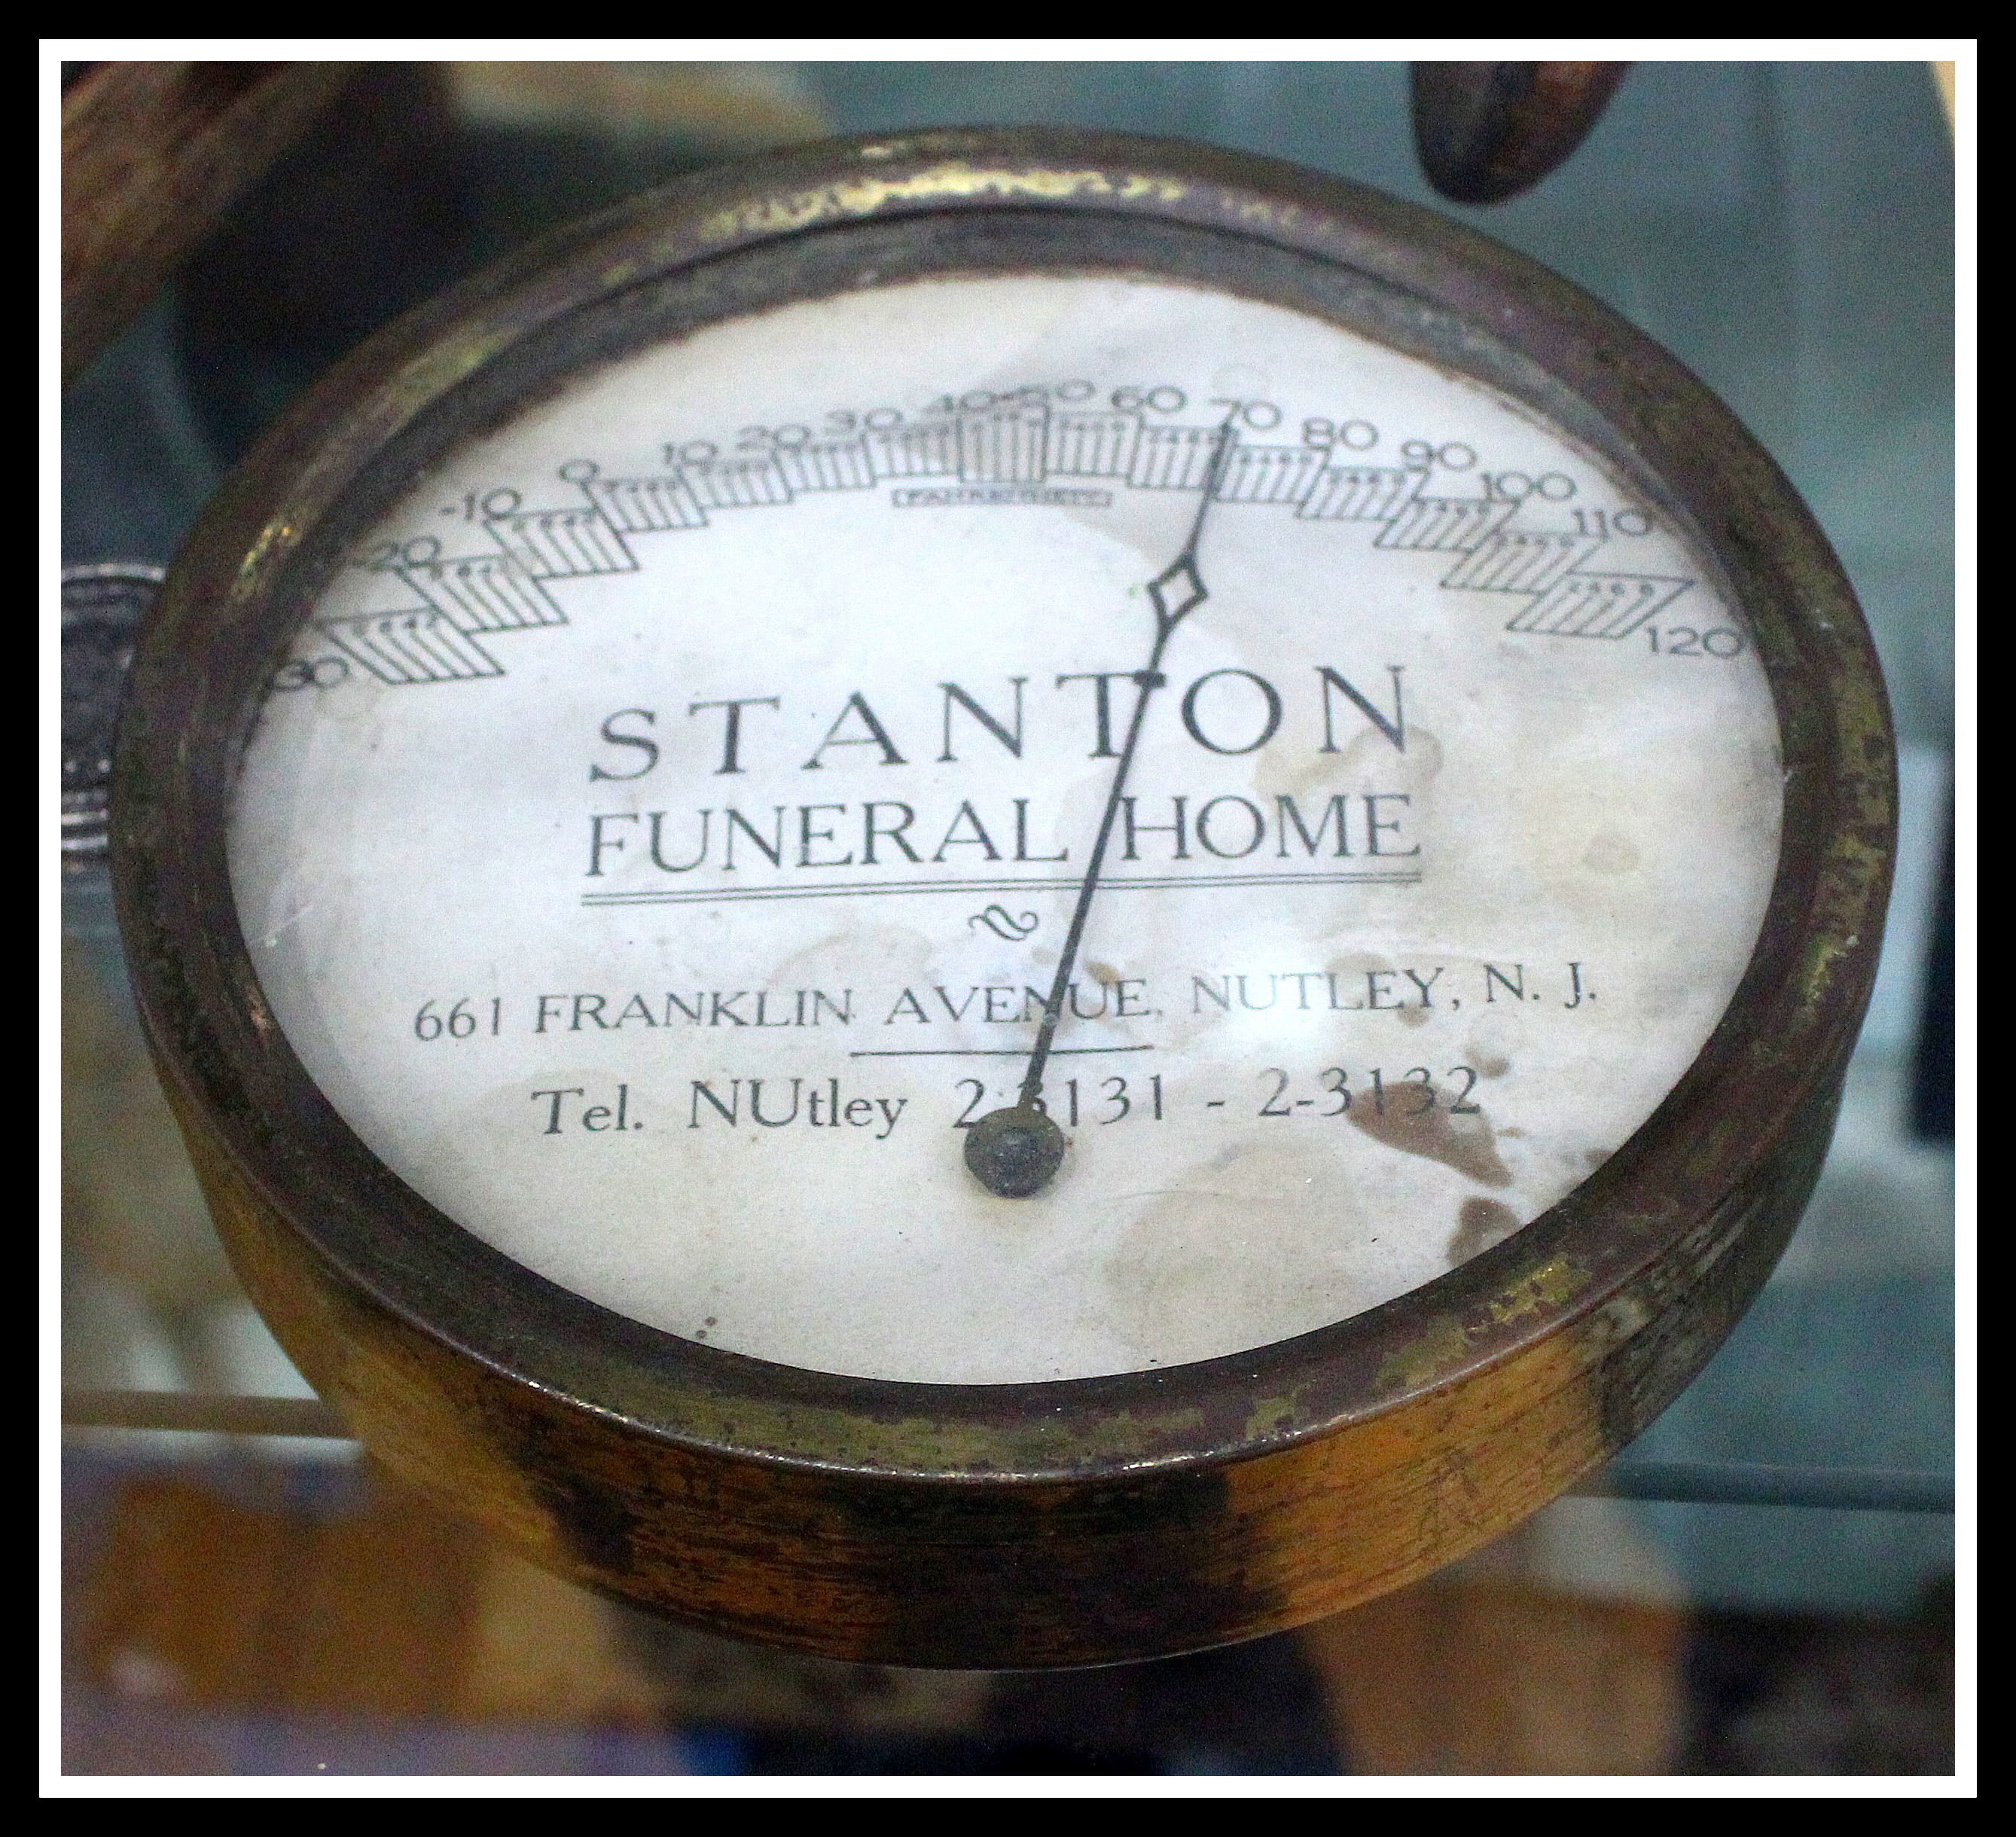 Nutley NJ Museum Exhibit: Stanton Funeral Home, 661 Franklin Avenue Nutley NJ 